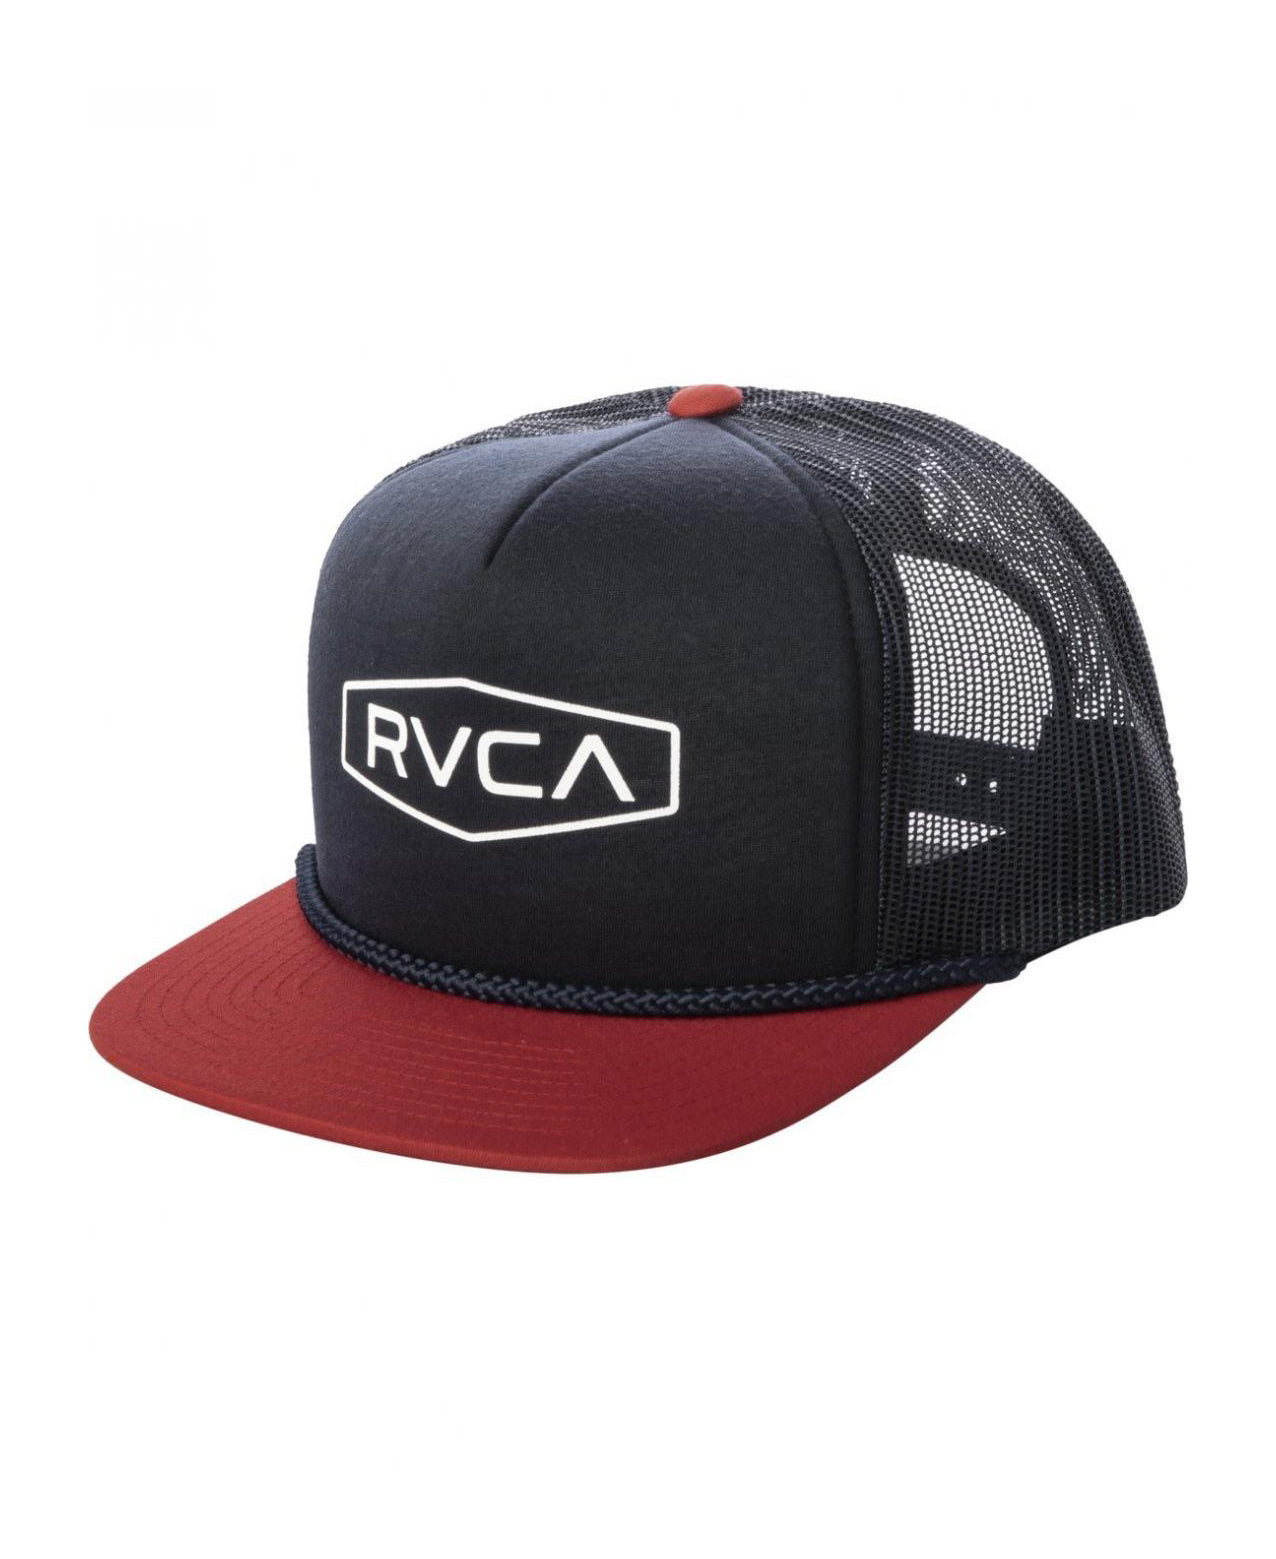 RVCA Staple Foamy Trucker Hat